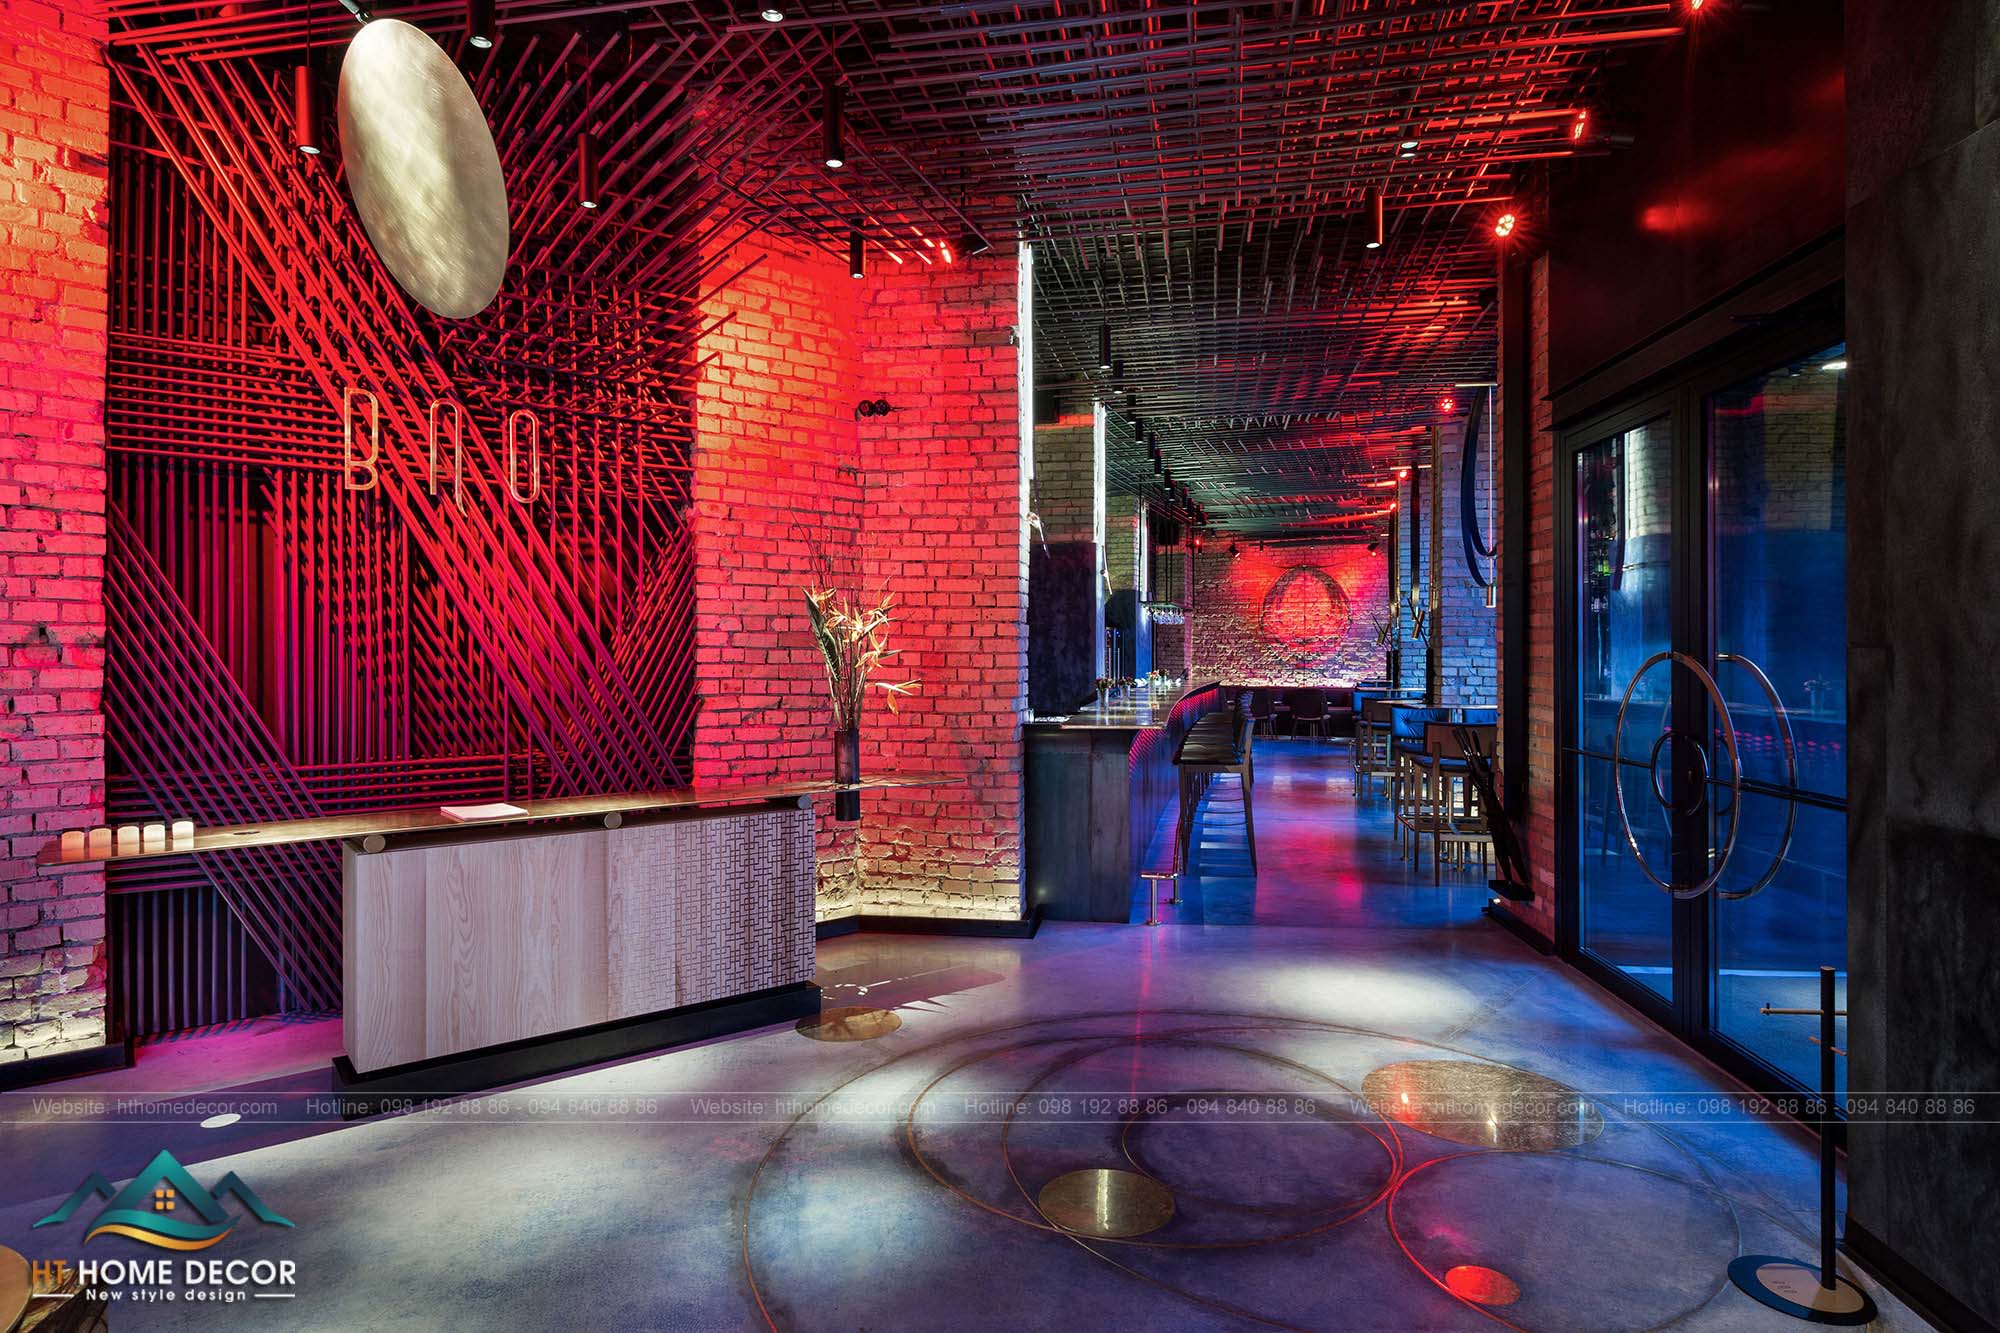 Nhà hàng cực kì rộng rãi với không gian sống động và ánh đèn đỏ chủ đạo trong không gian nhà hàng.